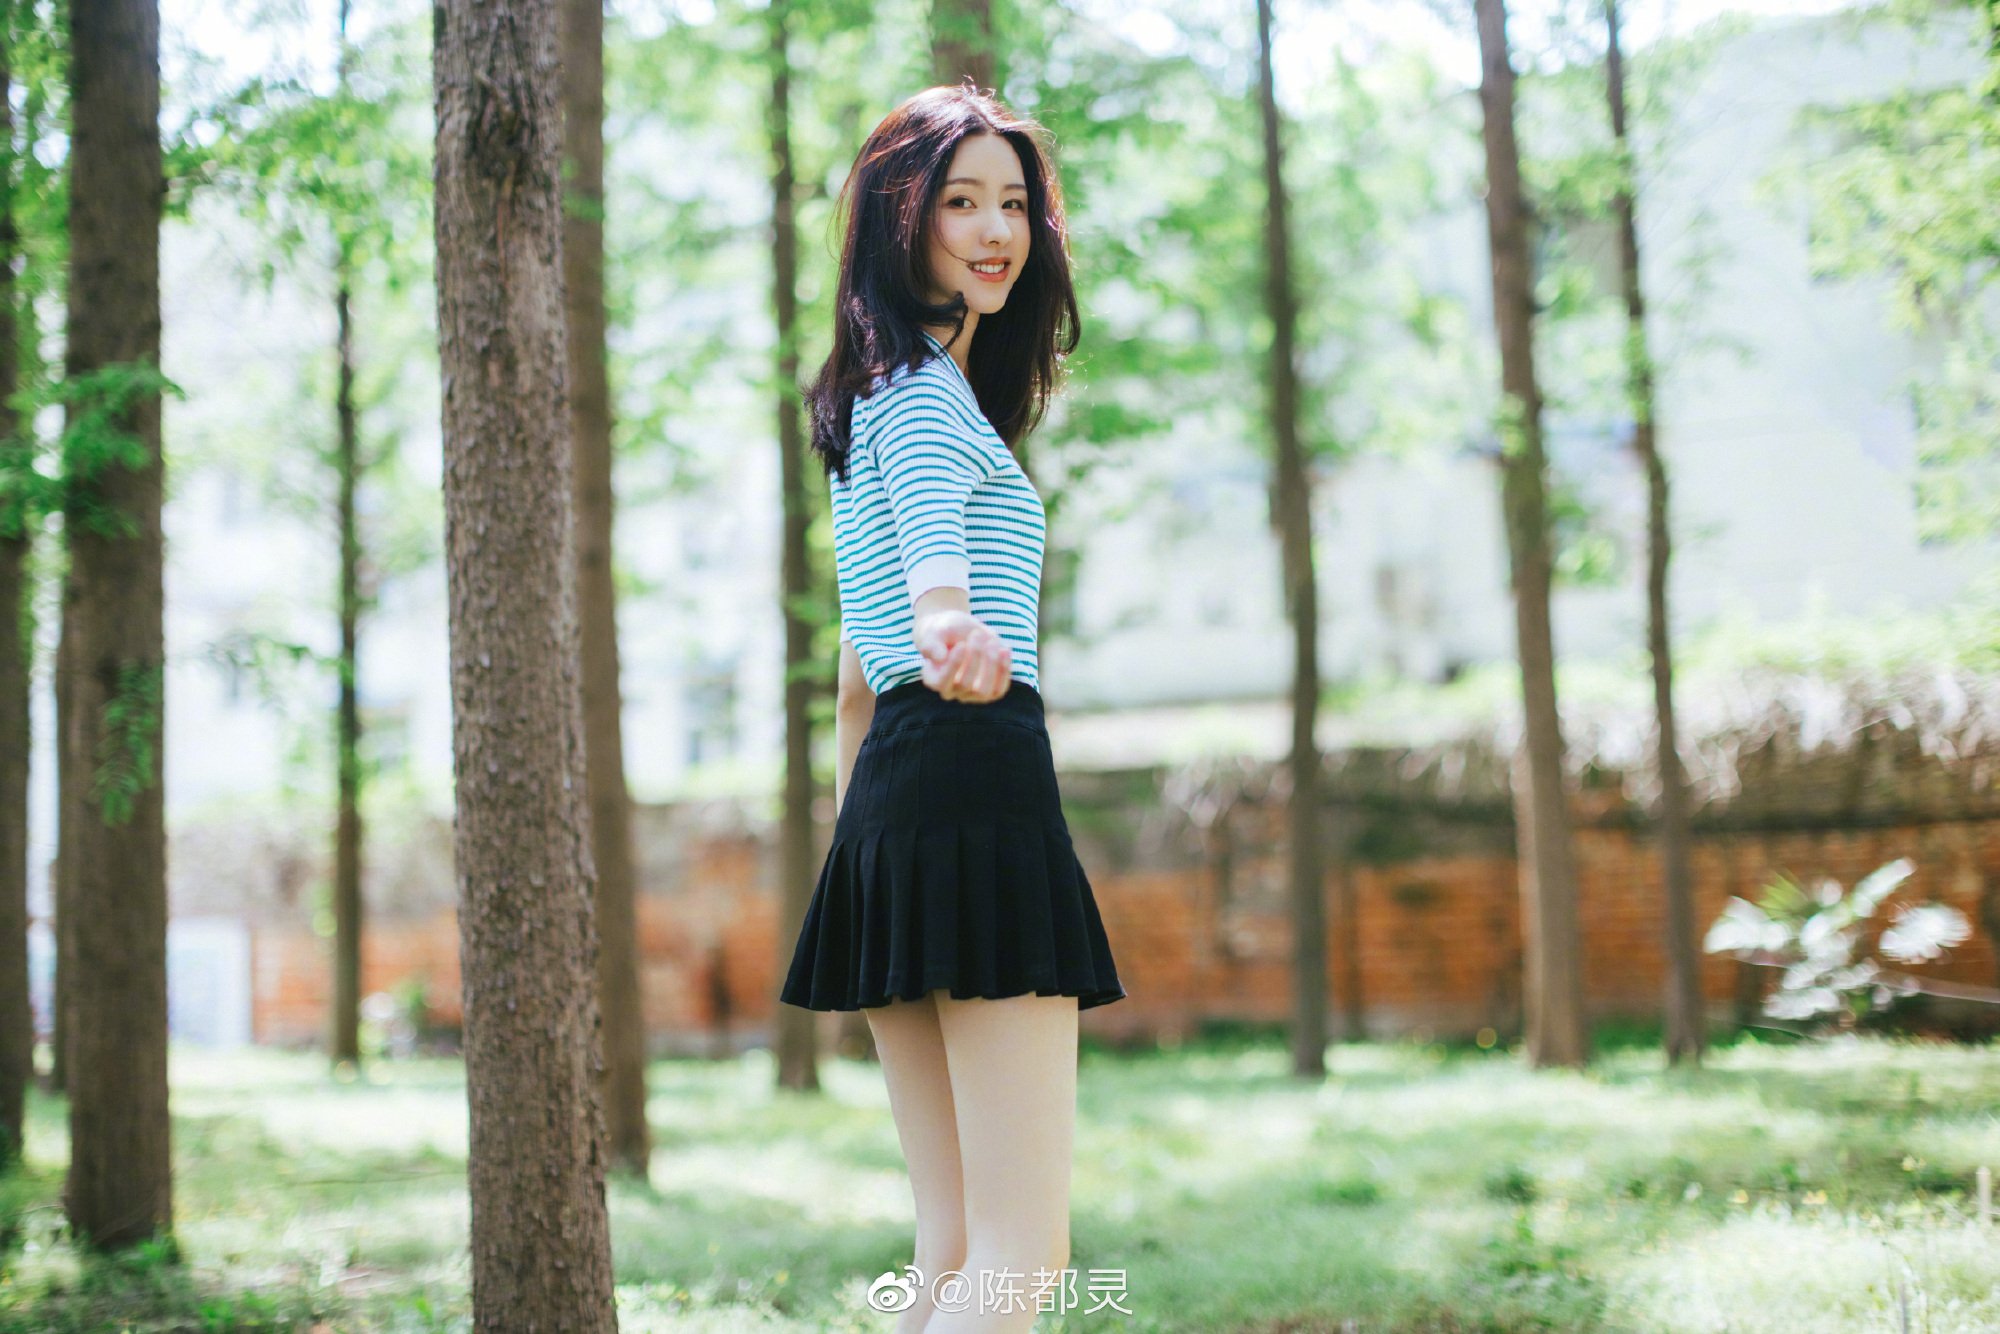 陈都灵 蓝色上衣配黑色裙子 彰显夏日气氛 美女图片